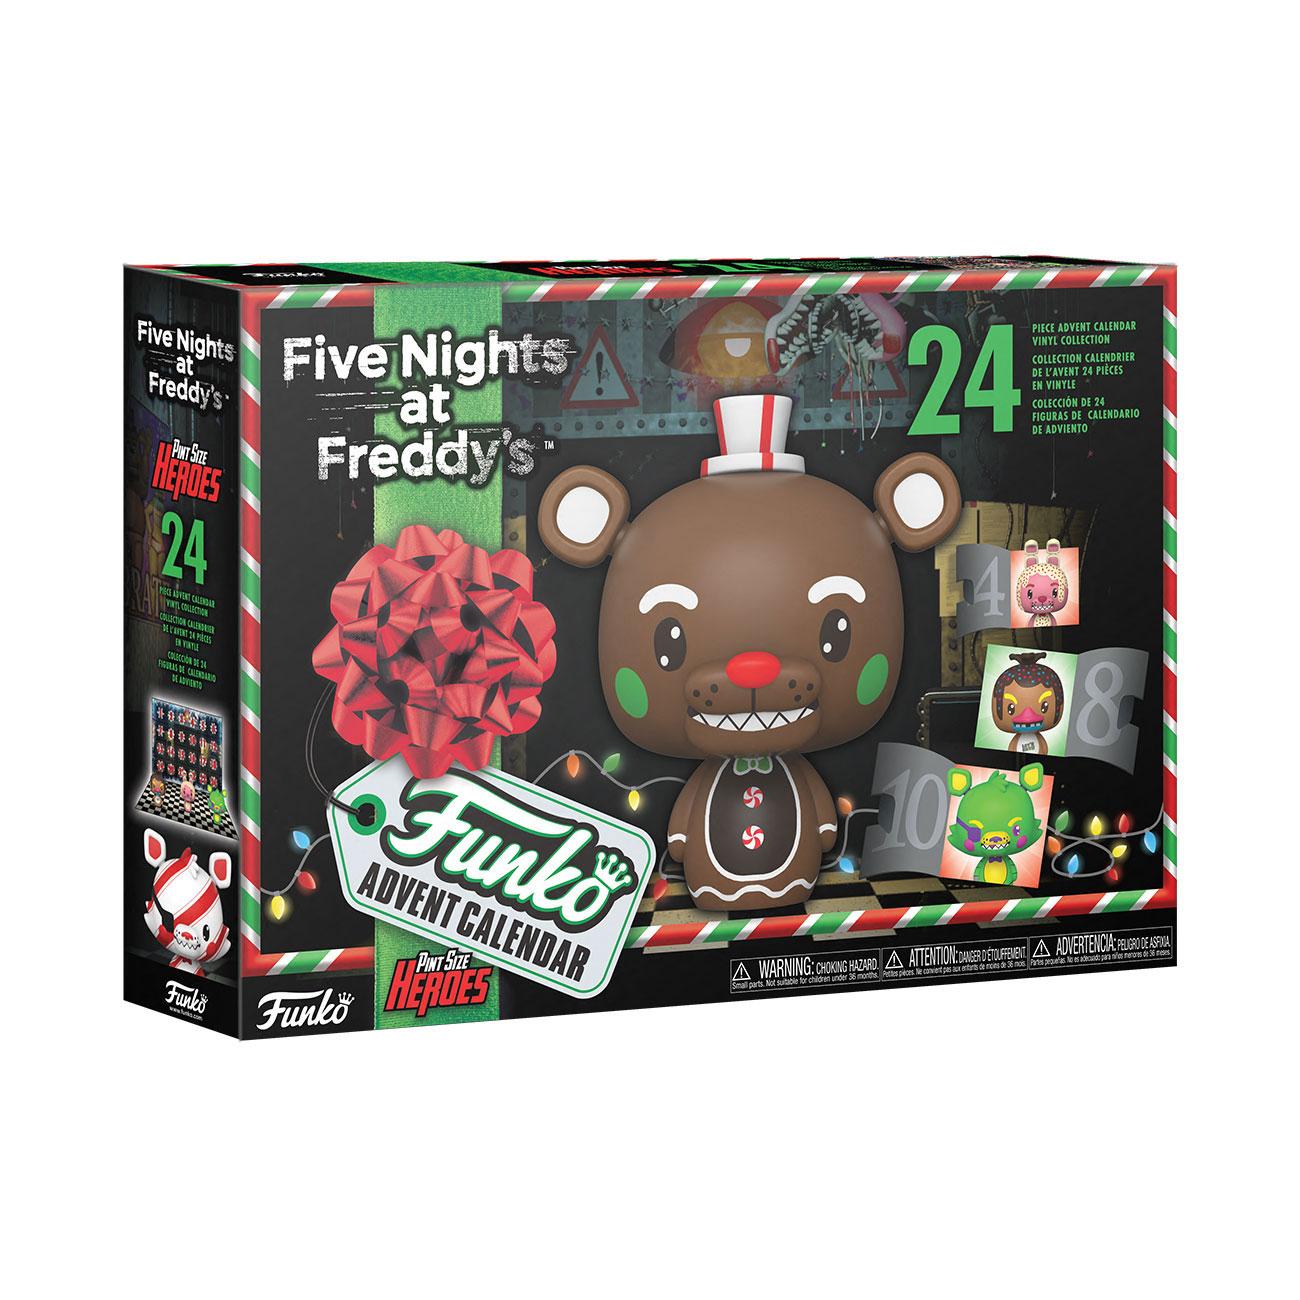 Calendrier de l'avent Five Nights at Freddy's Funko Pocket Pop! 2021 Funko